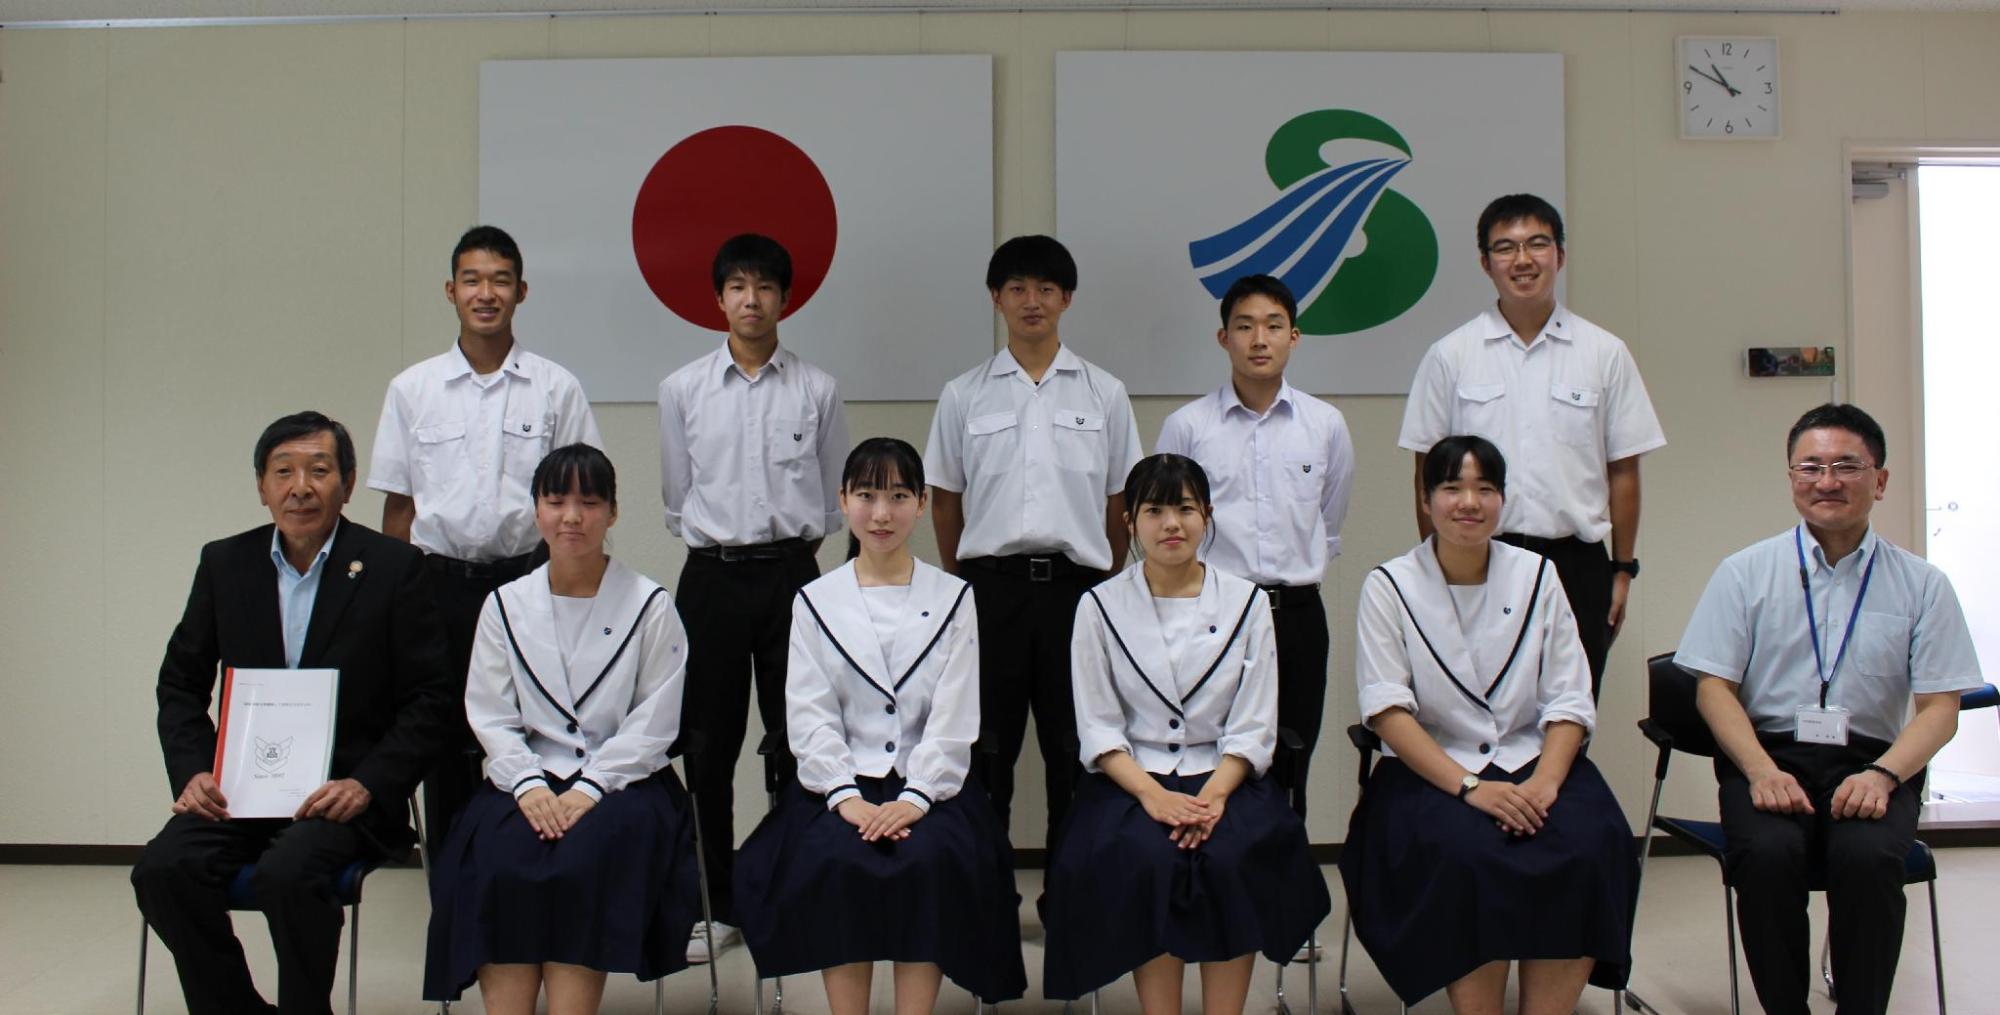 日の丸と薩摩川内市旗が掛けられた室内で、賞状を持った男性1名と、半袖シャツの中年男性1名、女生徒4名が前方に座り、男子生徒5名が後ろに立っている記念写真